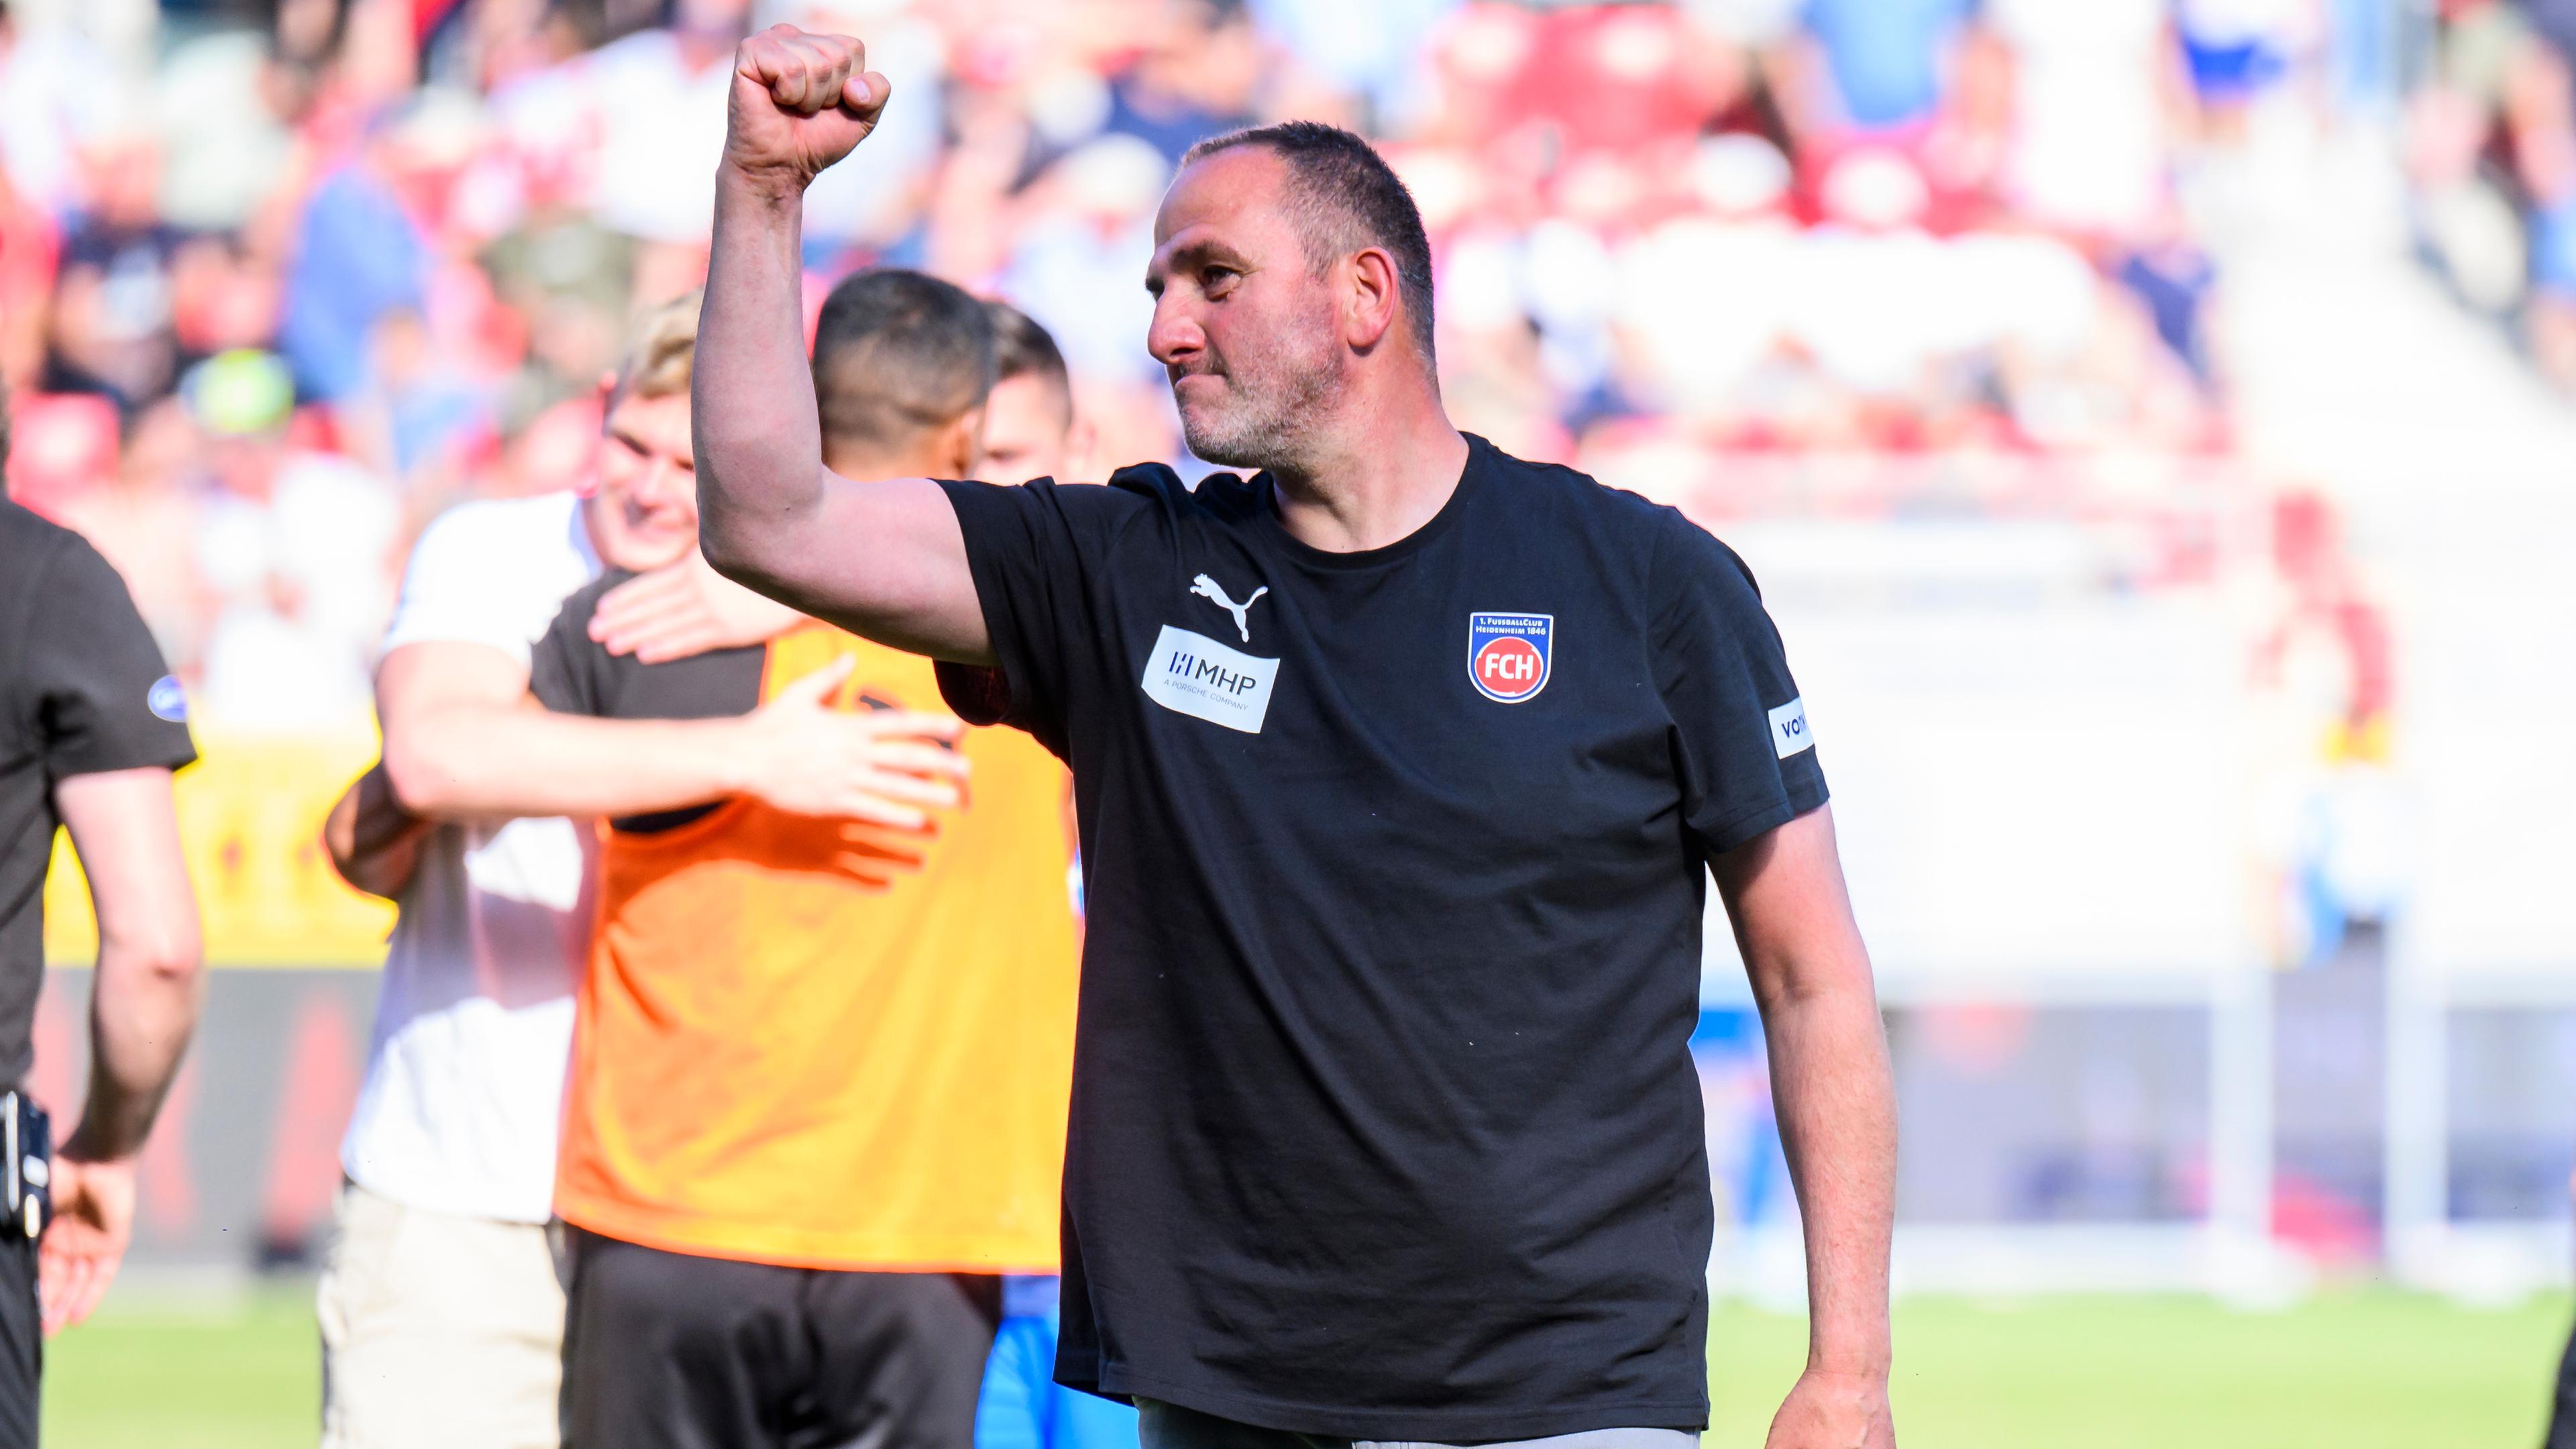 Heidenheim-Trainer Frank Schmidt jubelt nach dem Spiel über den Aufstieg in die 2. Bundesliga.